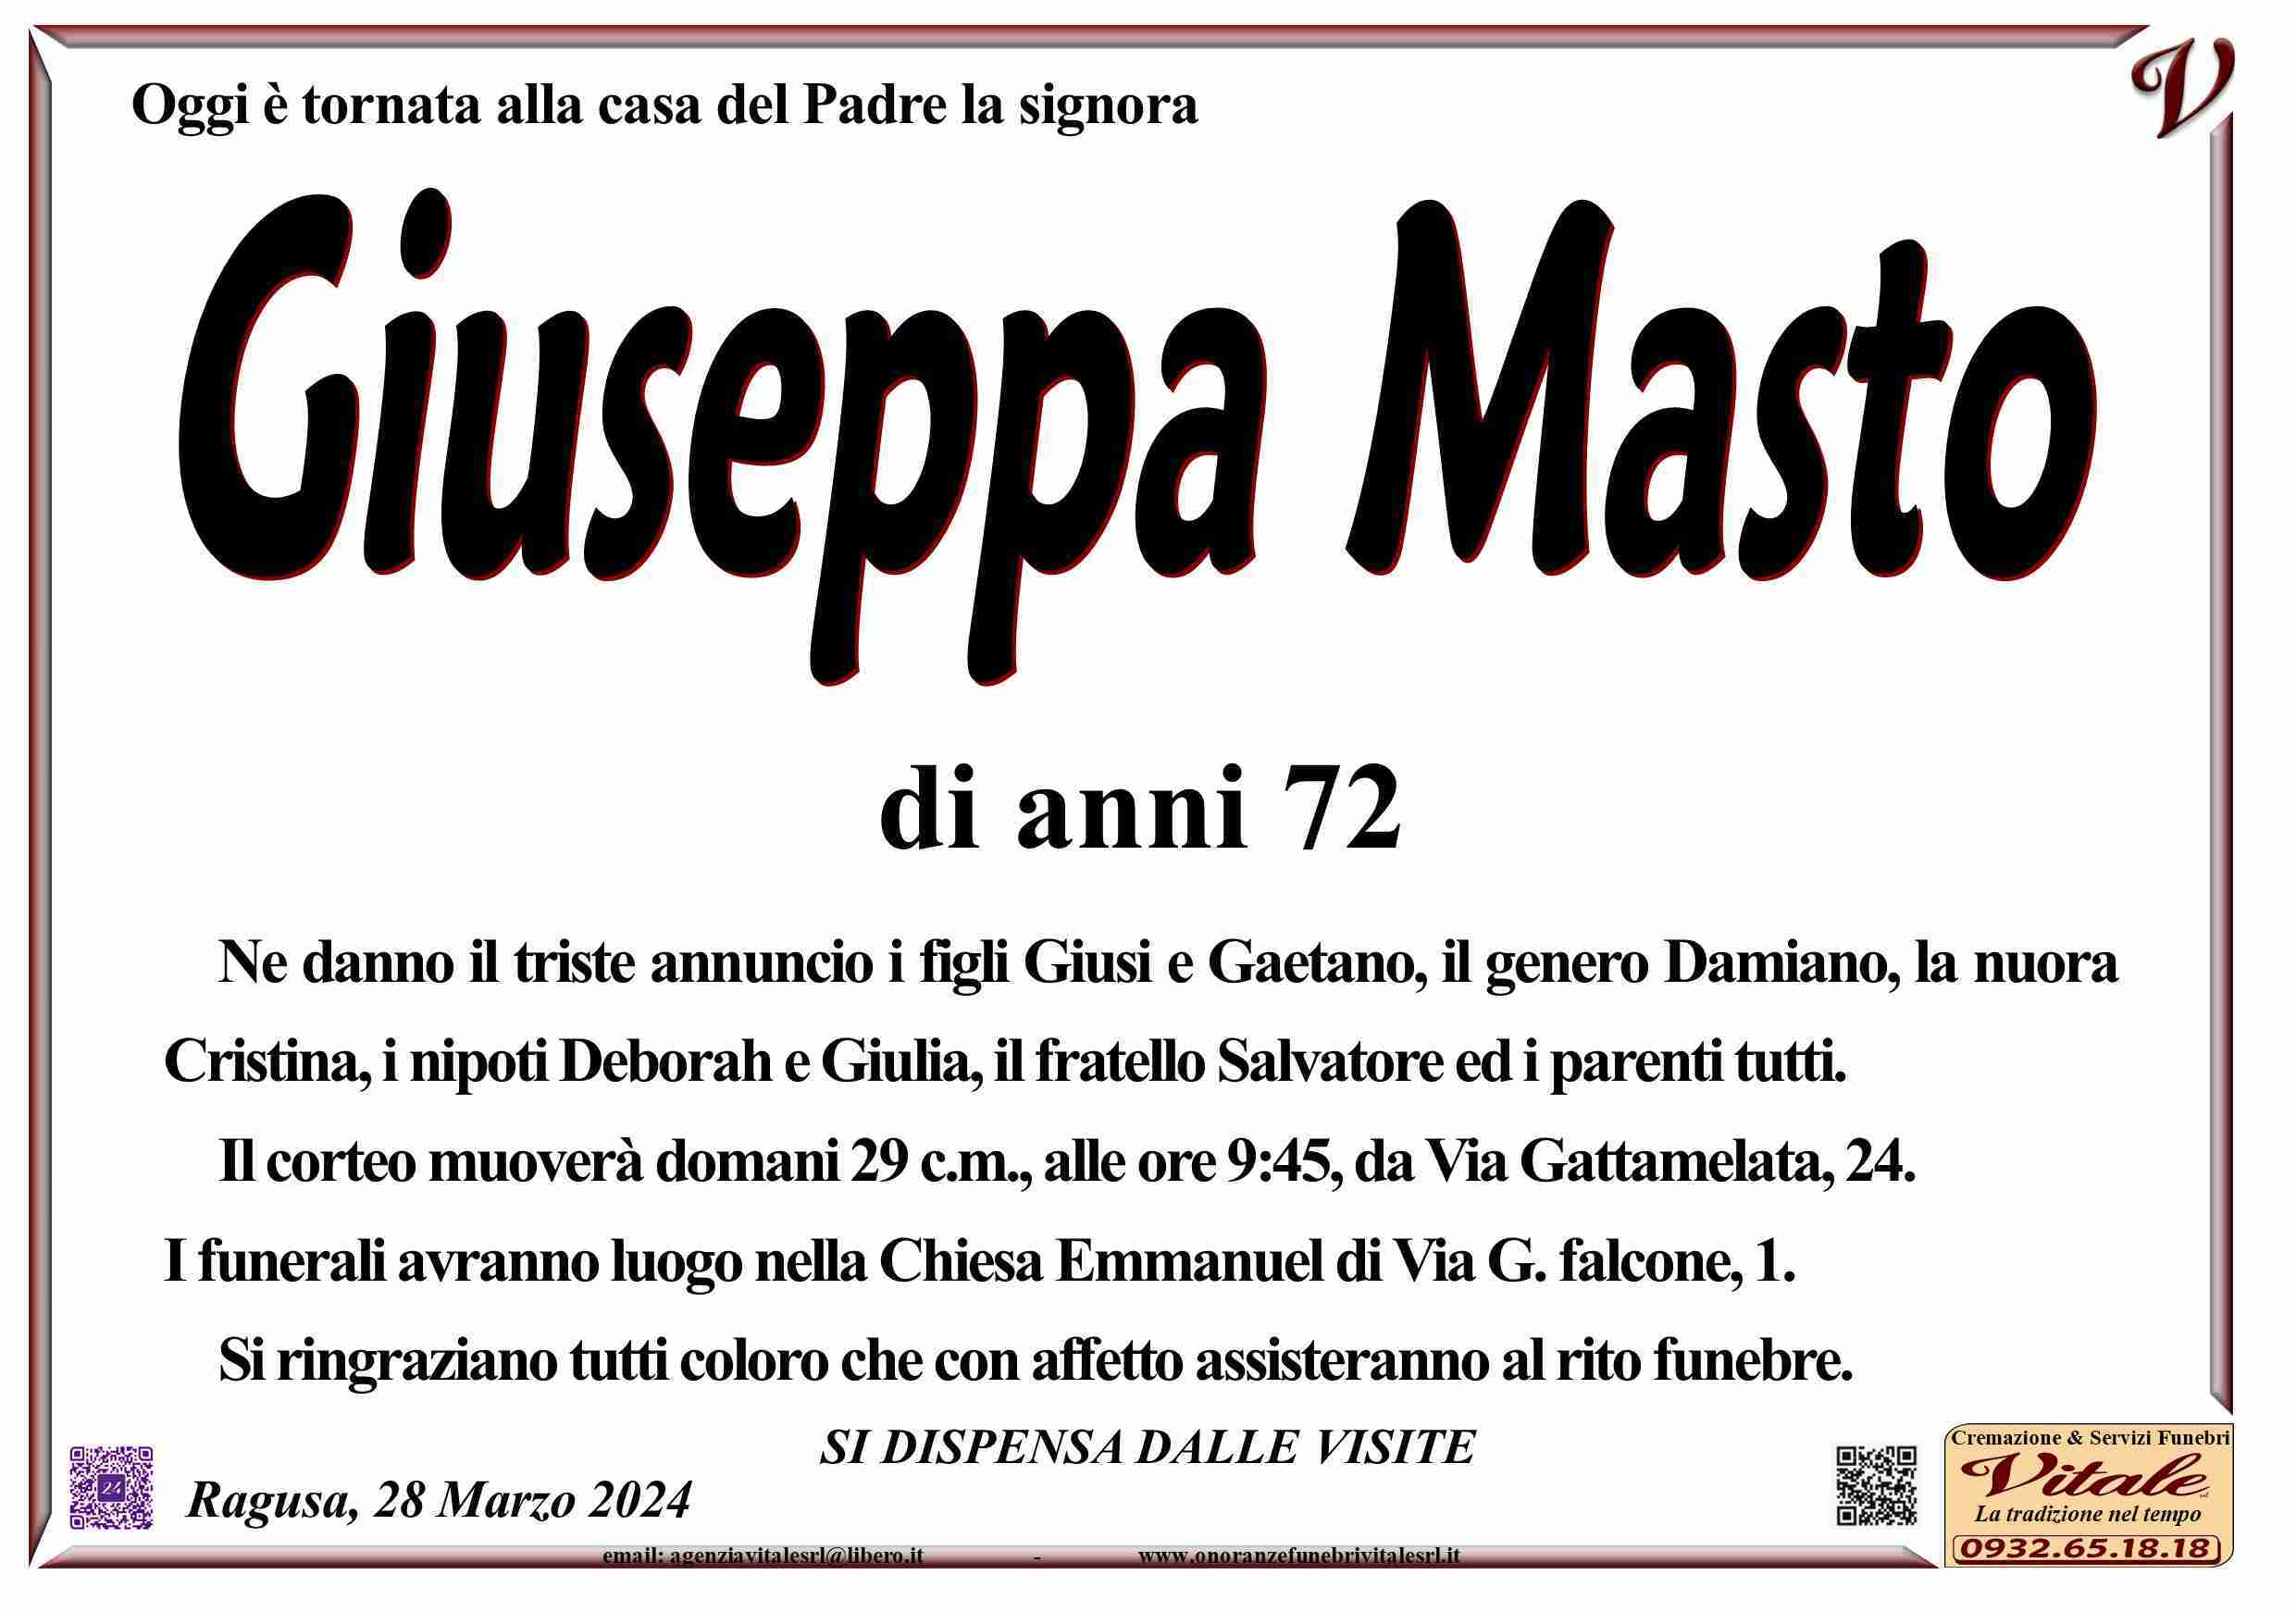 Giuseppa Masto